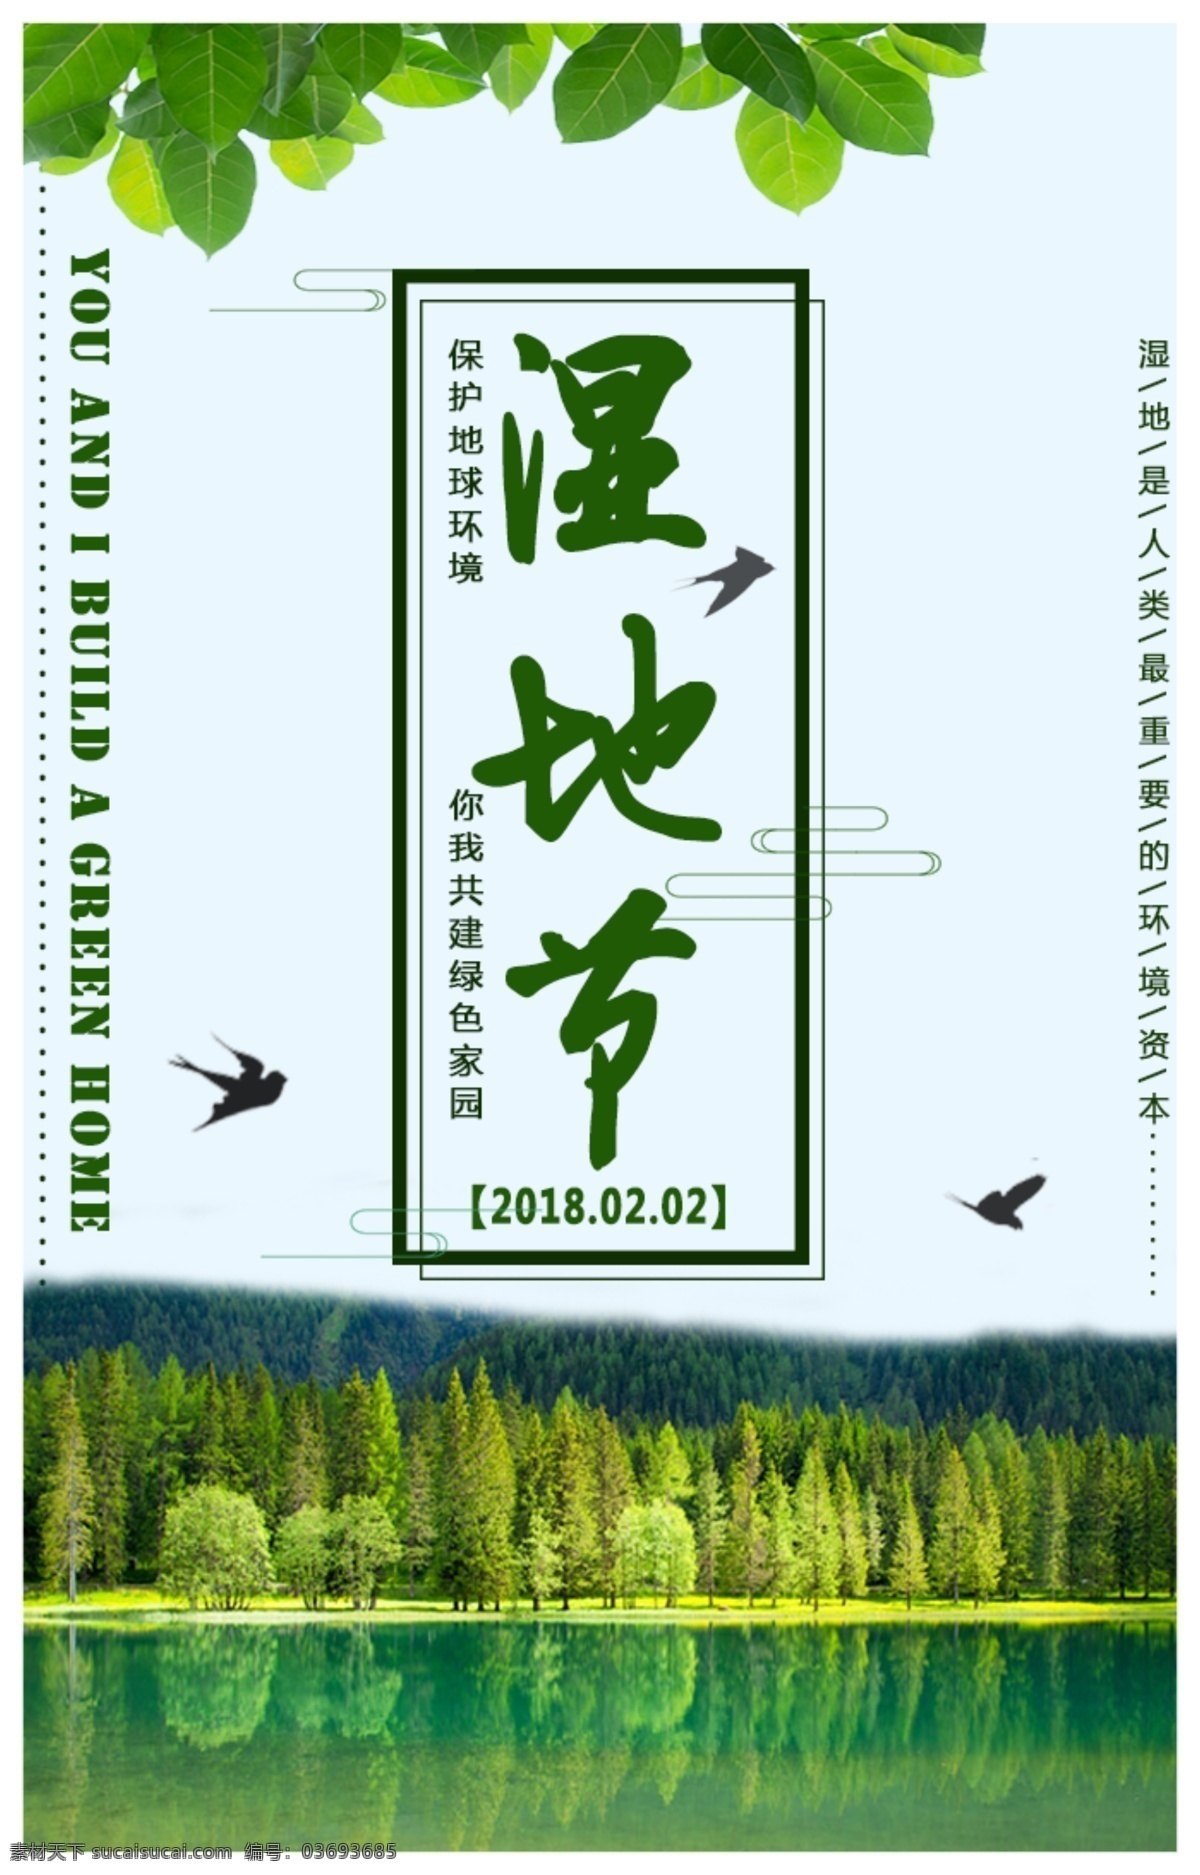 清新 绿色 湿地 节 h5 海报 环境保护 生态 湿地节 微信 自然